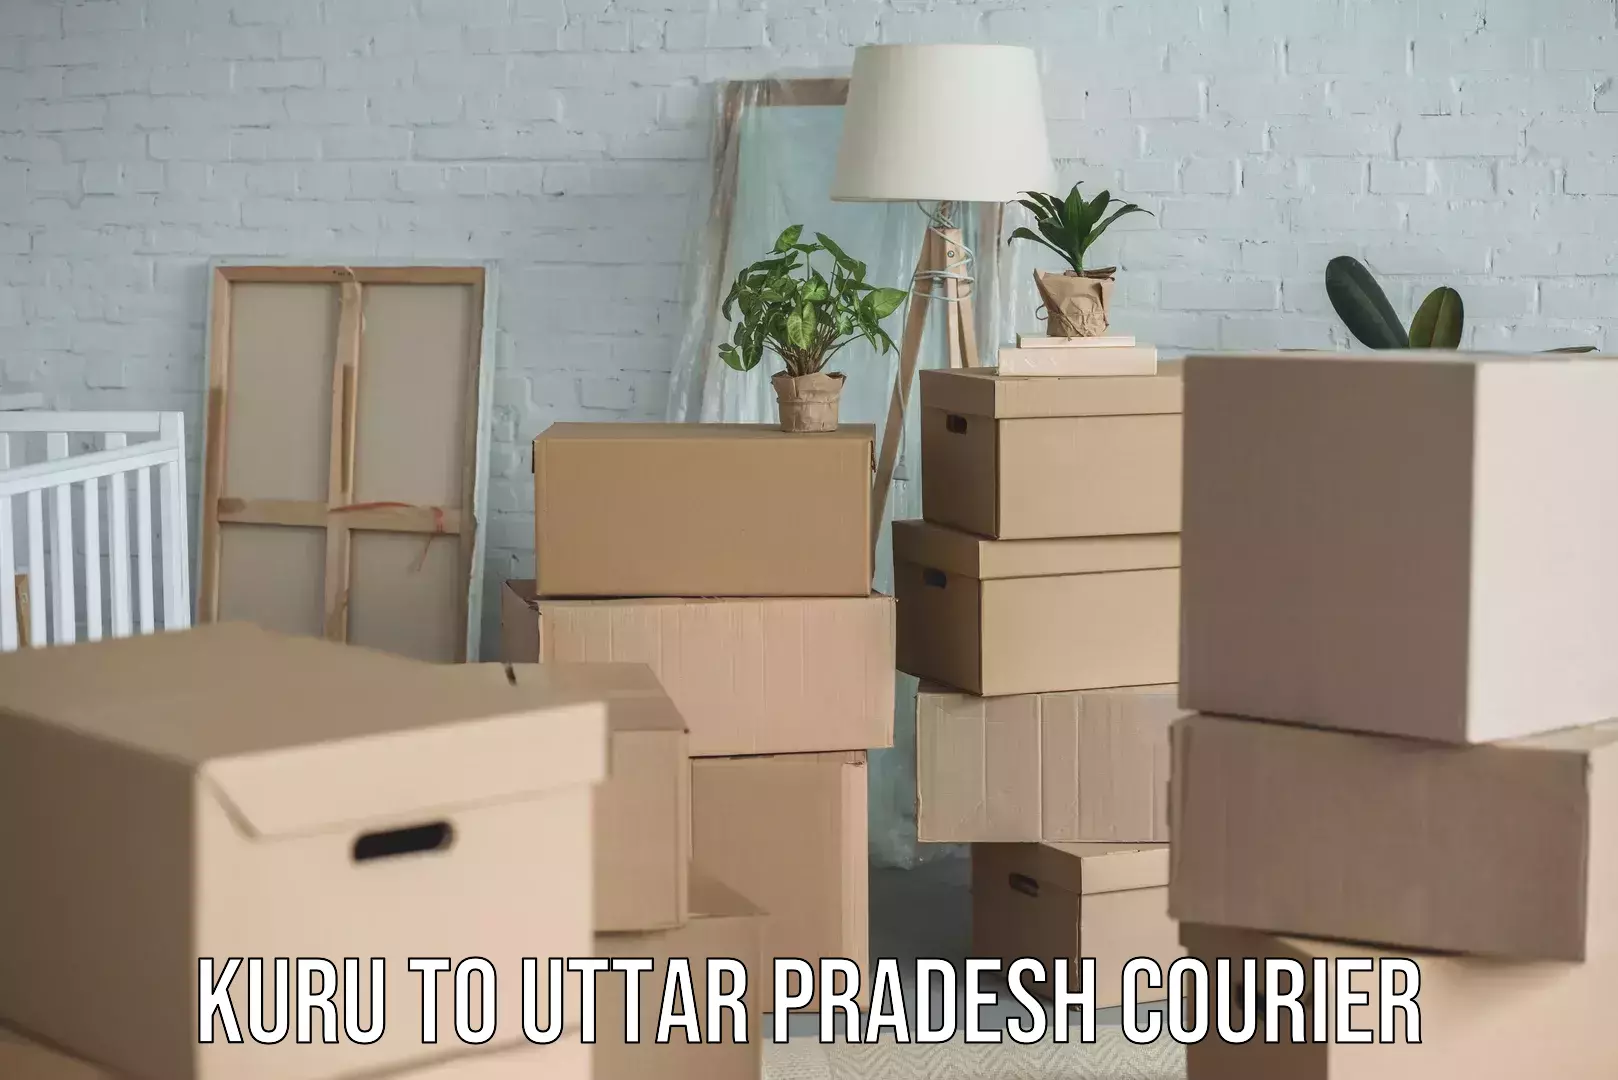 Household moving experts Kuru to Uttar Pradesh